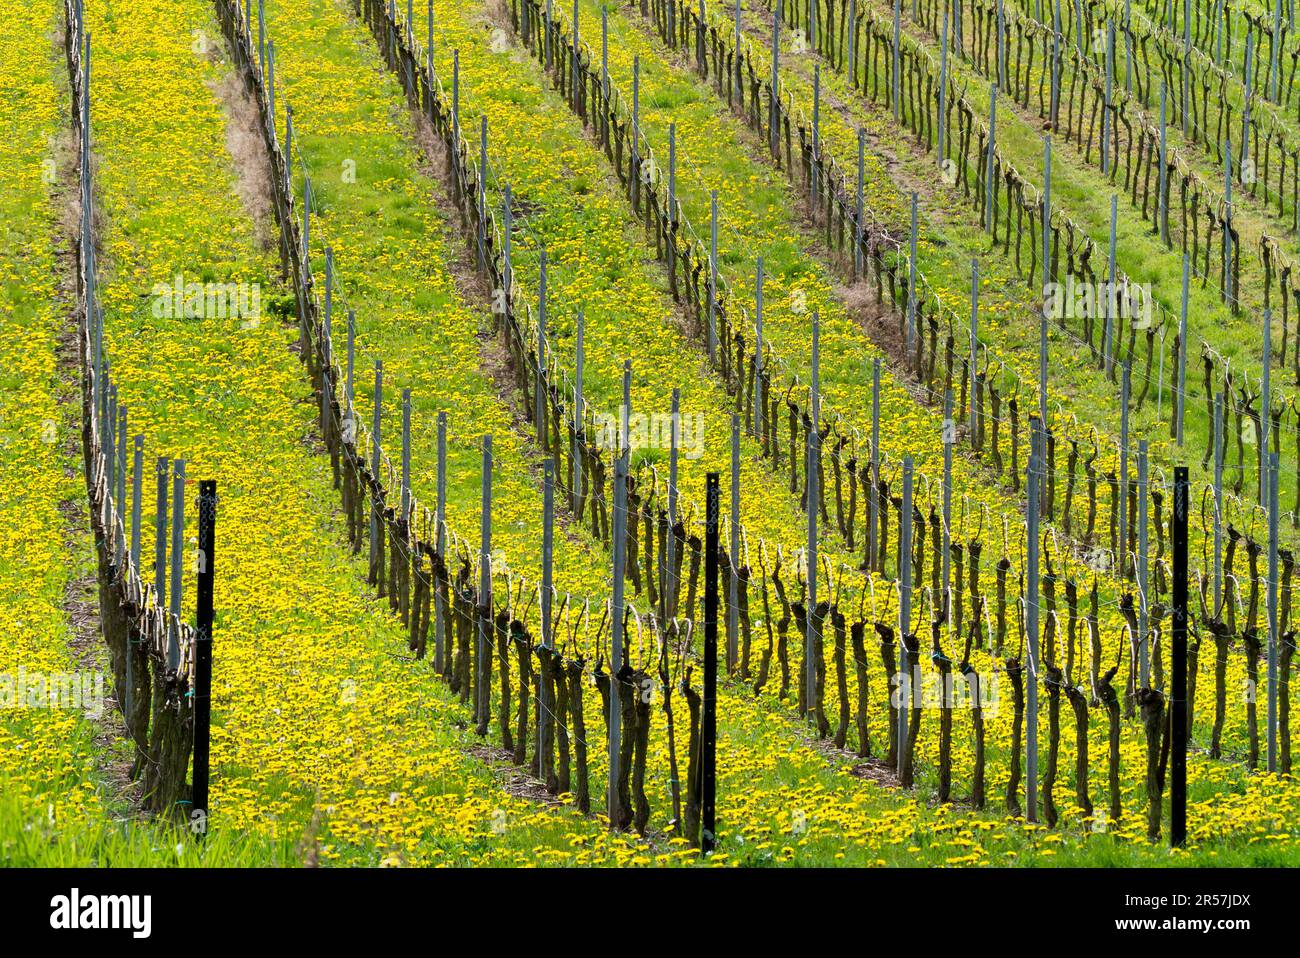 Vineyard in spring Stock Photo